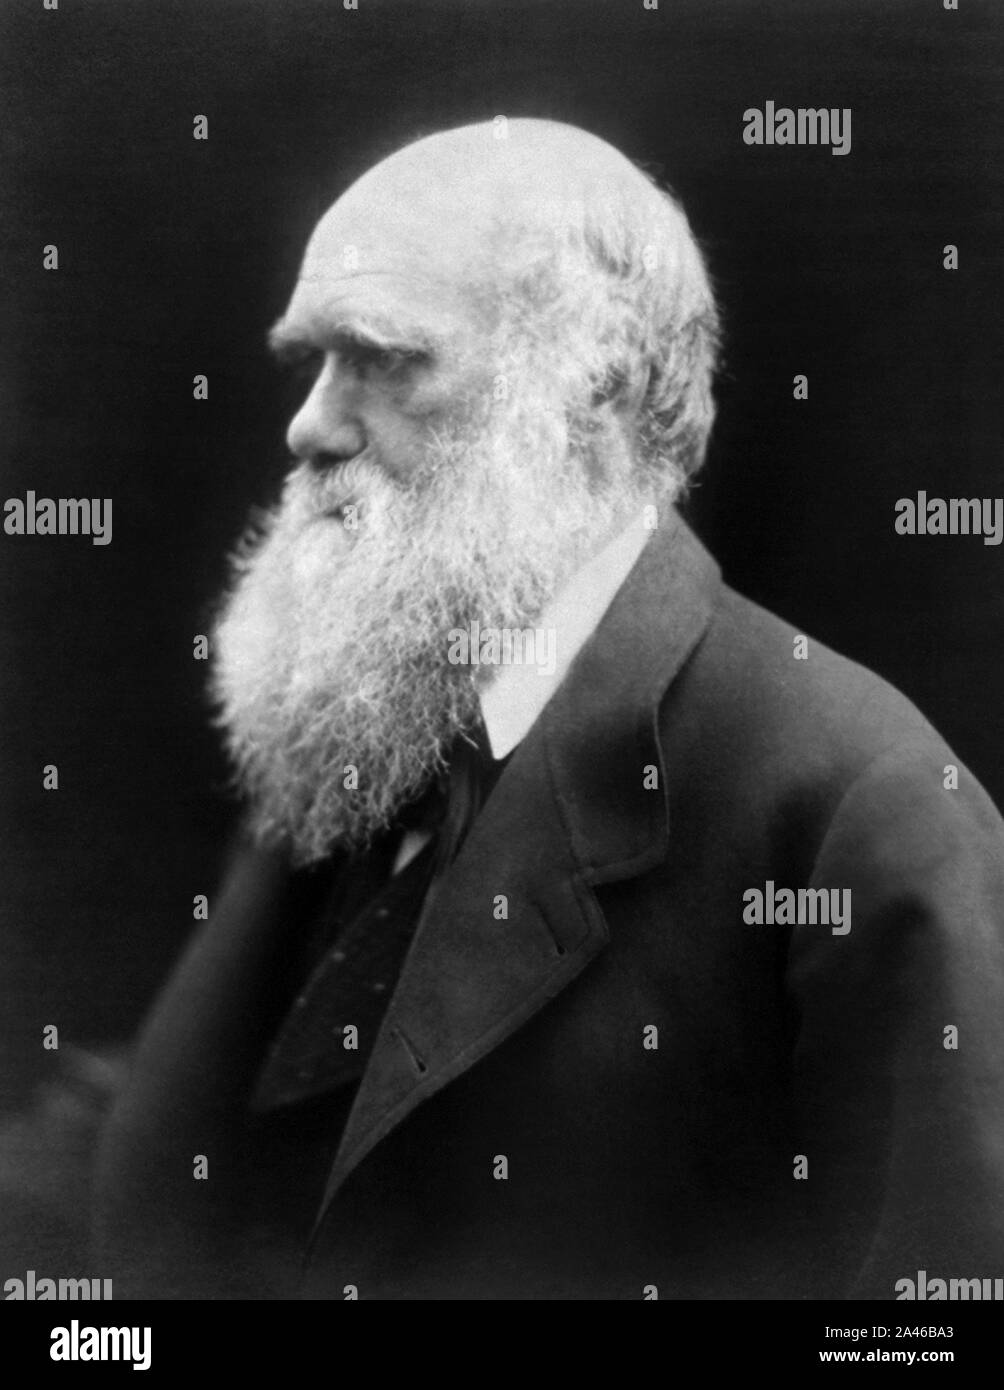 Vintage foto ritratto del naturalista inglese, geologo e biologo Charles Darwin (1809 - 1882), le cui opere famose sulla teoria evolutiva includono "sull'origine delle specie" nel 1859 e "la discesa dell'uomo" in 1871. Foto circa nel 1870 da Julia Margaret Cameron. Foto Stock